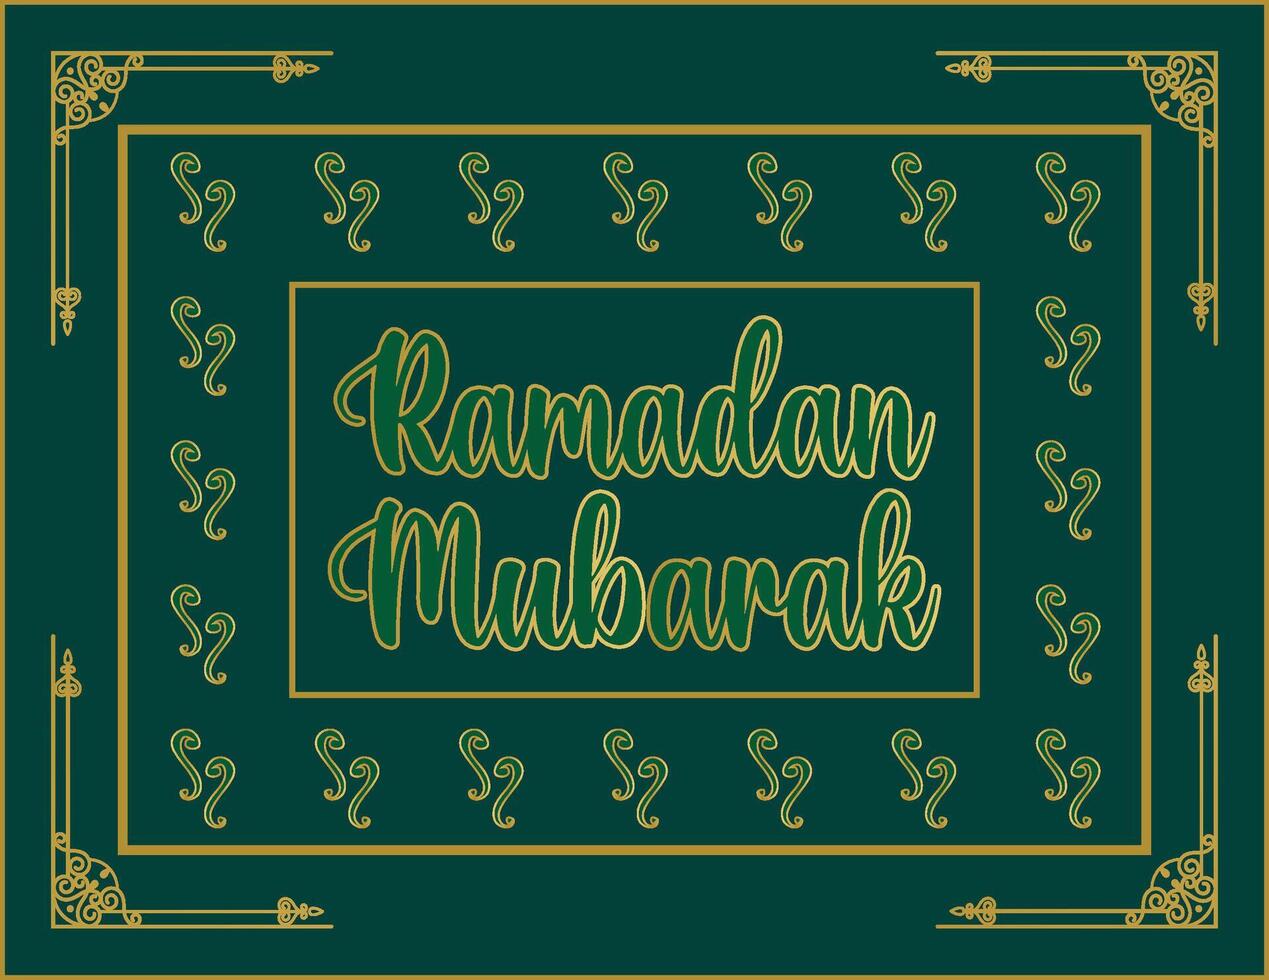 Ramadan celebrazione modello vettore